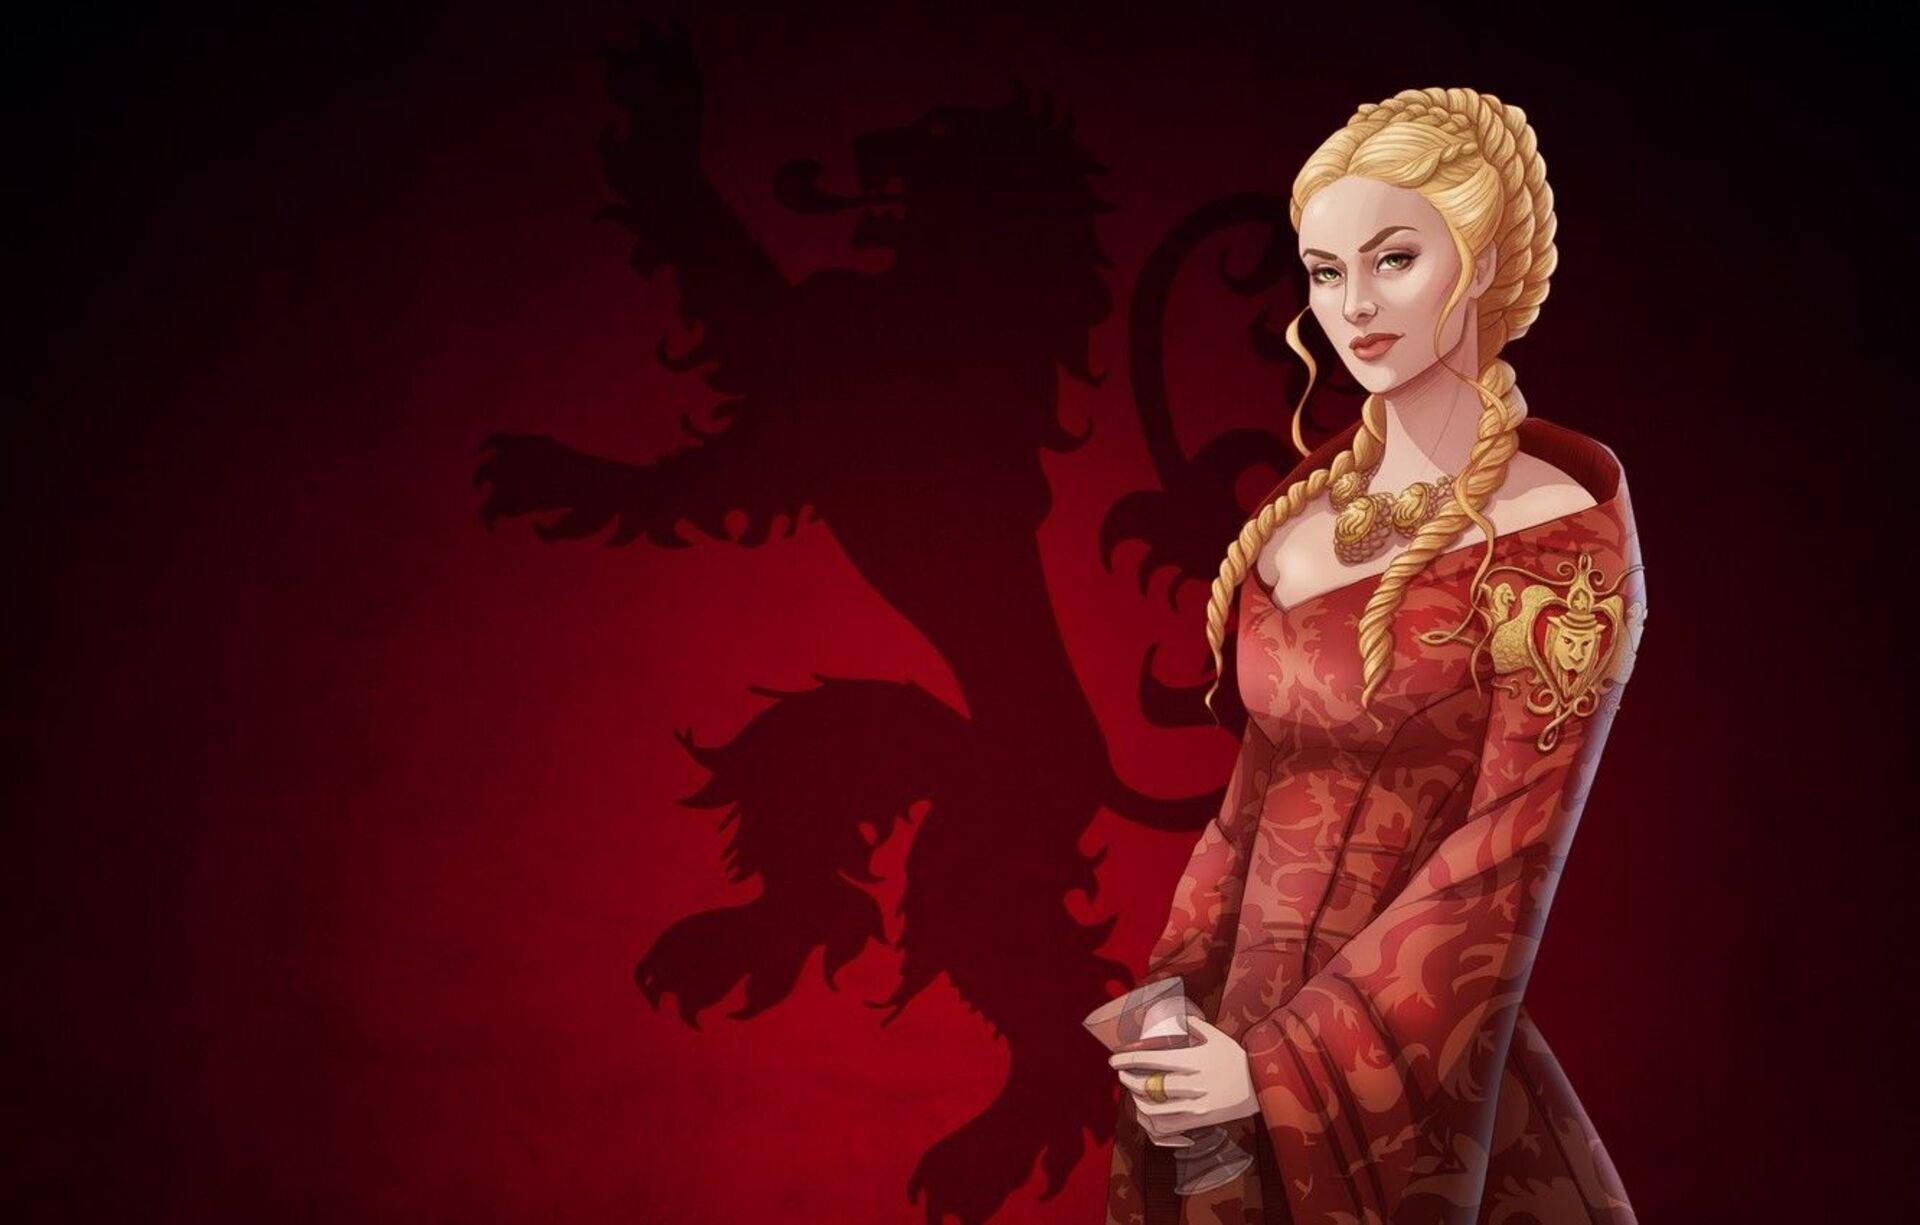 Red Cersei Lannister Digital Art Wallpaper